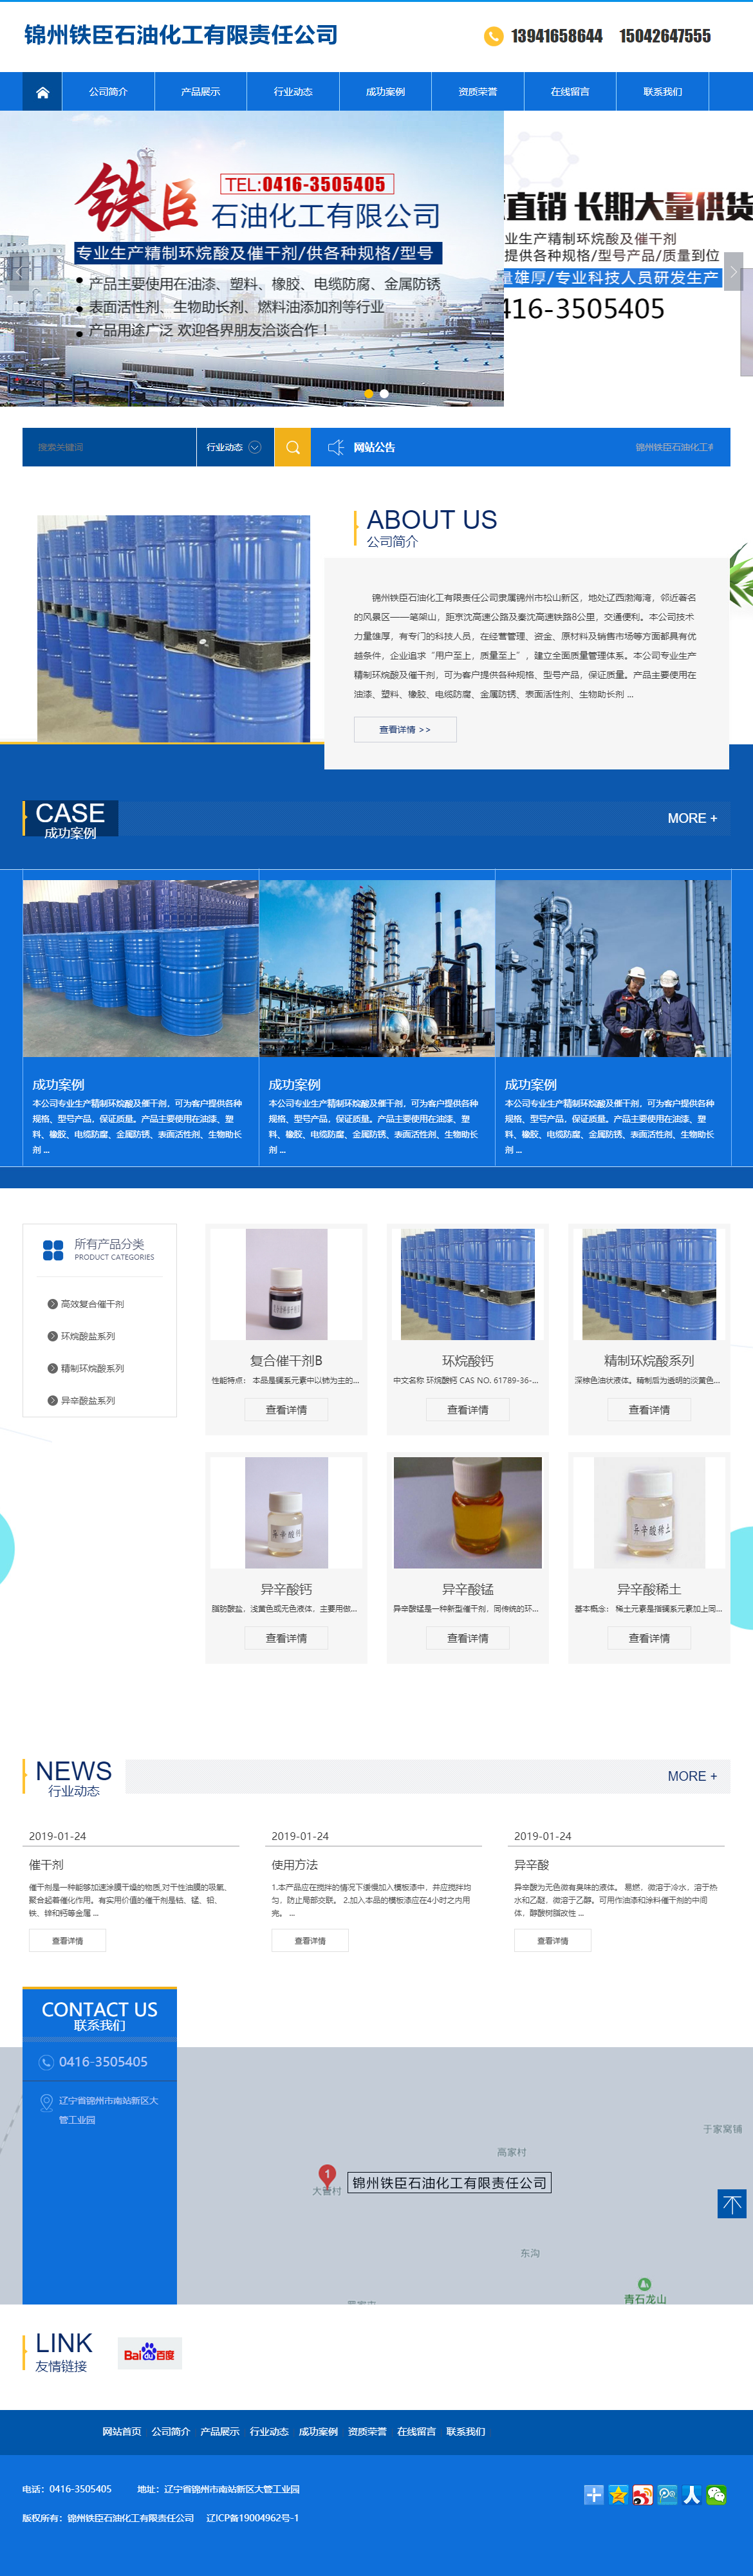 锦州铁臣石油化工有限责任公司网站案例